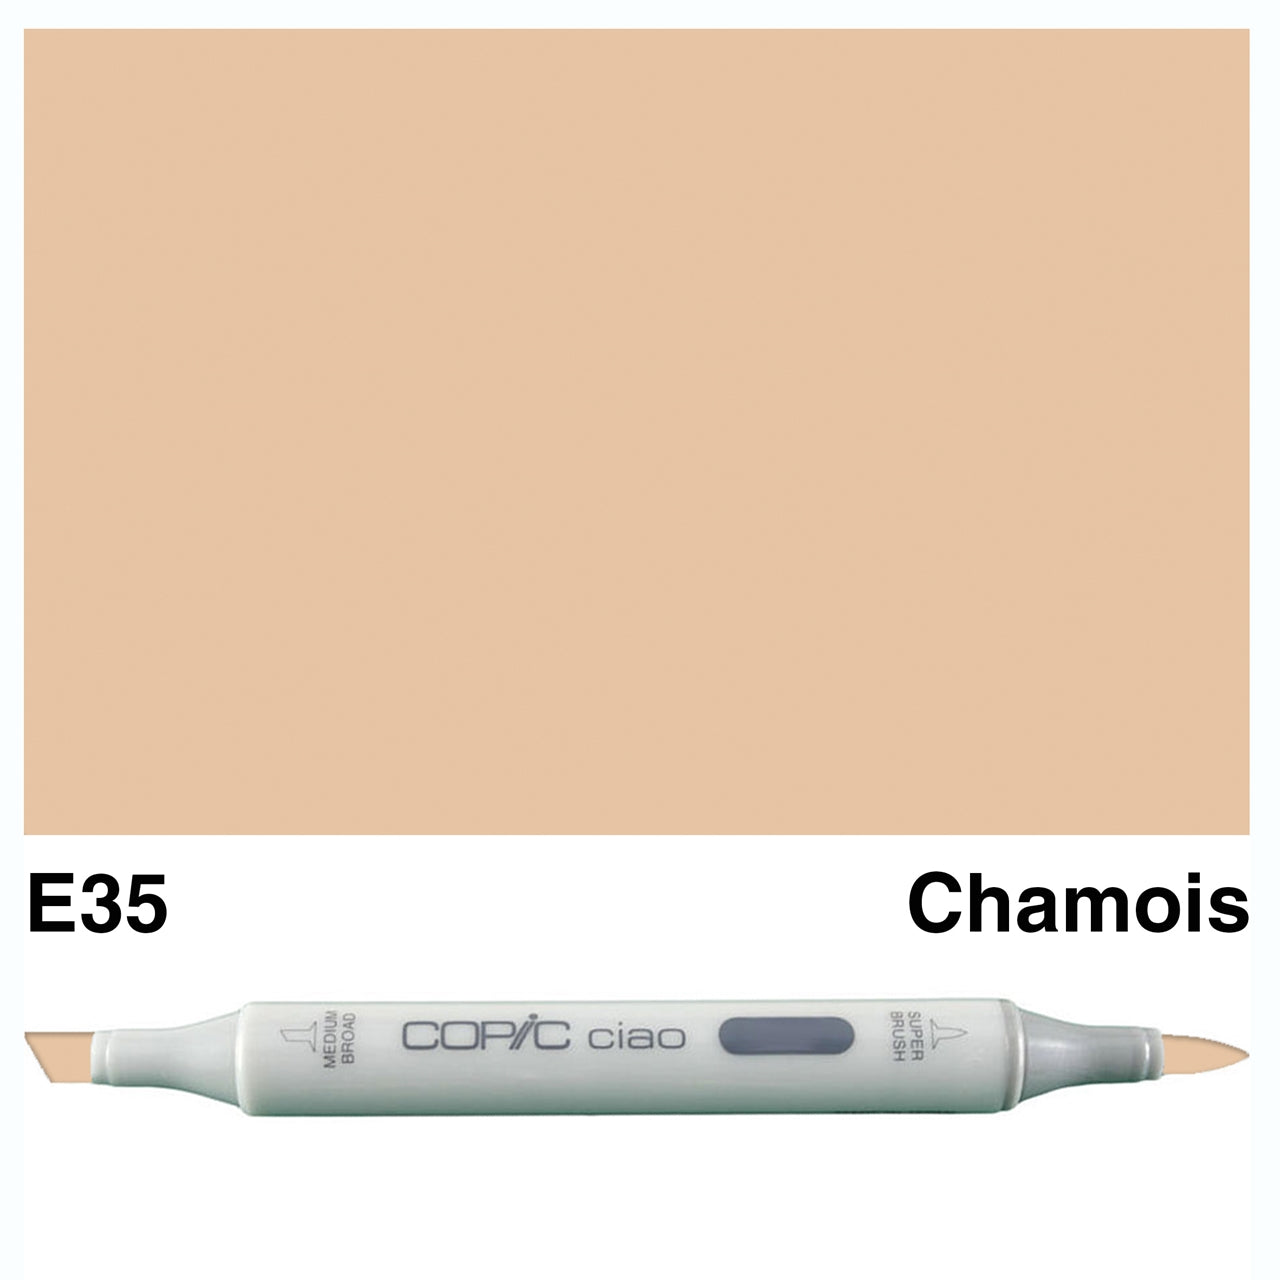 Copic Ciao E35 Chamois